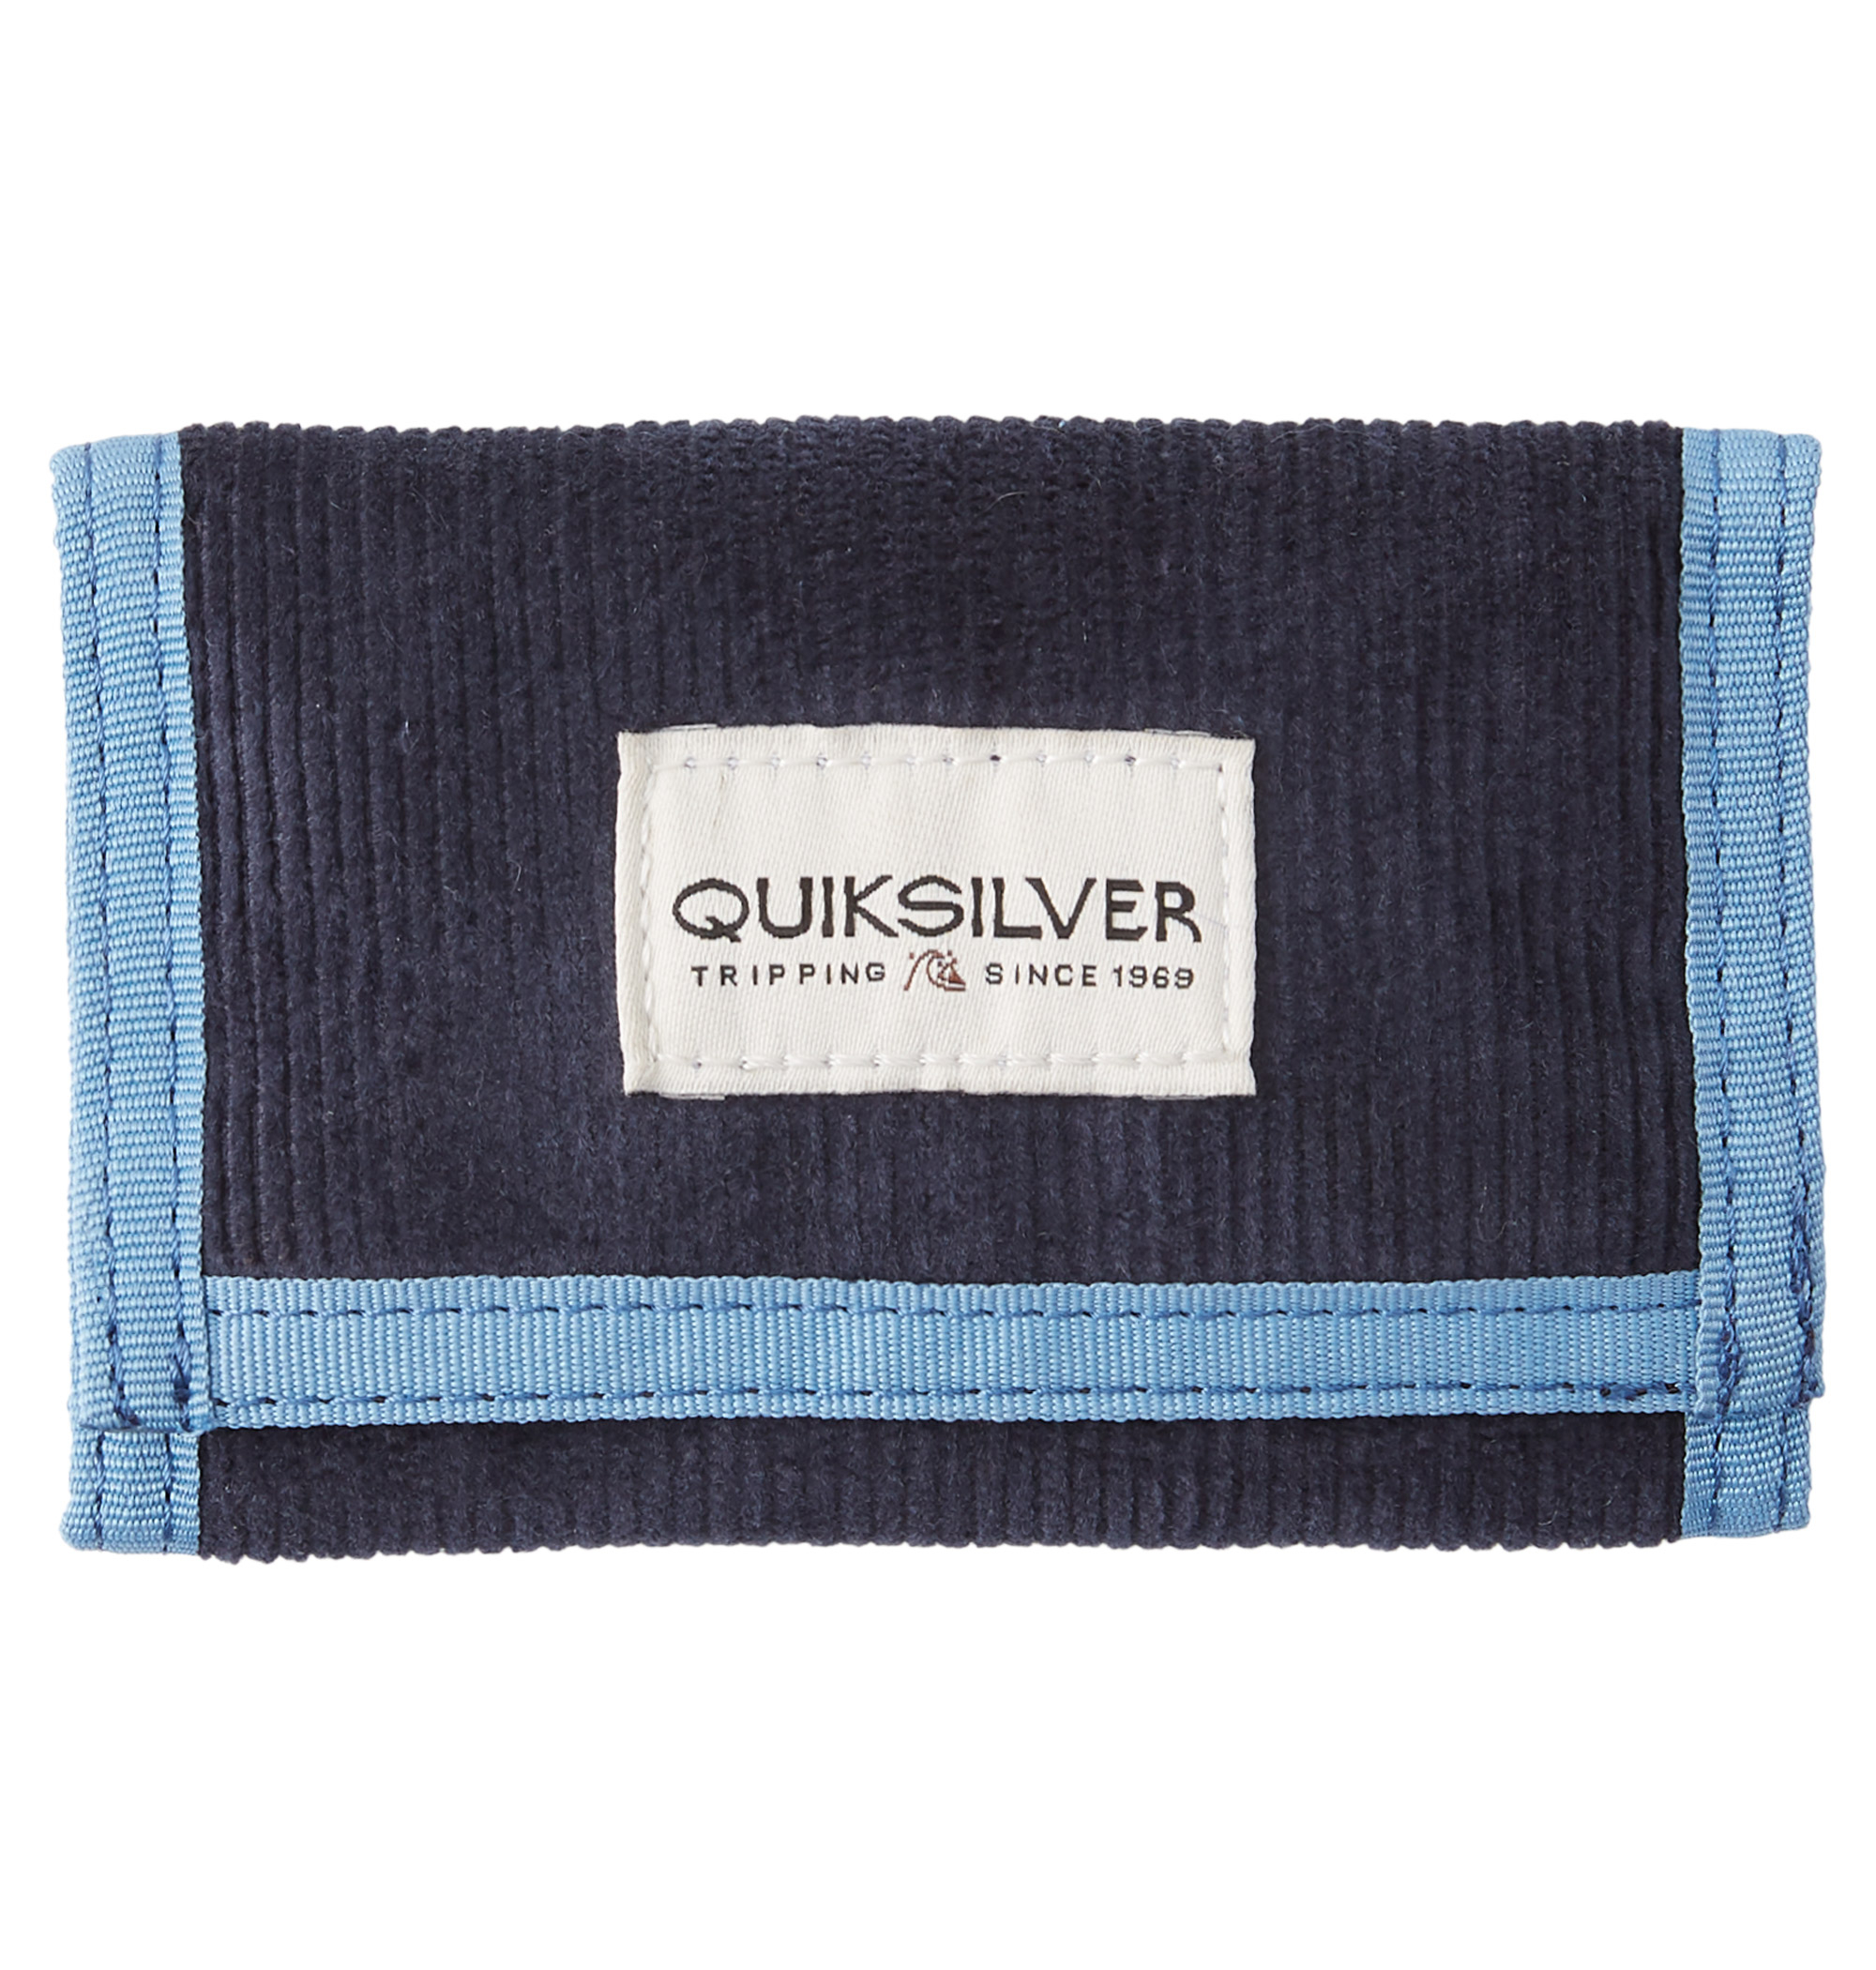 ＜Quiksilver＞ THE EVERYDAILY カラーによって異なるデザインとブランドロゴがアイキャッチになるお財布が入荷致しました